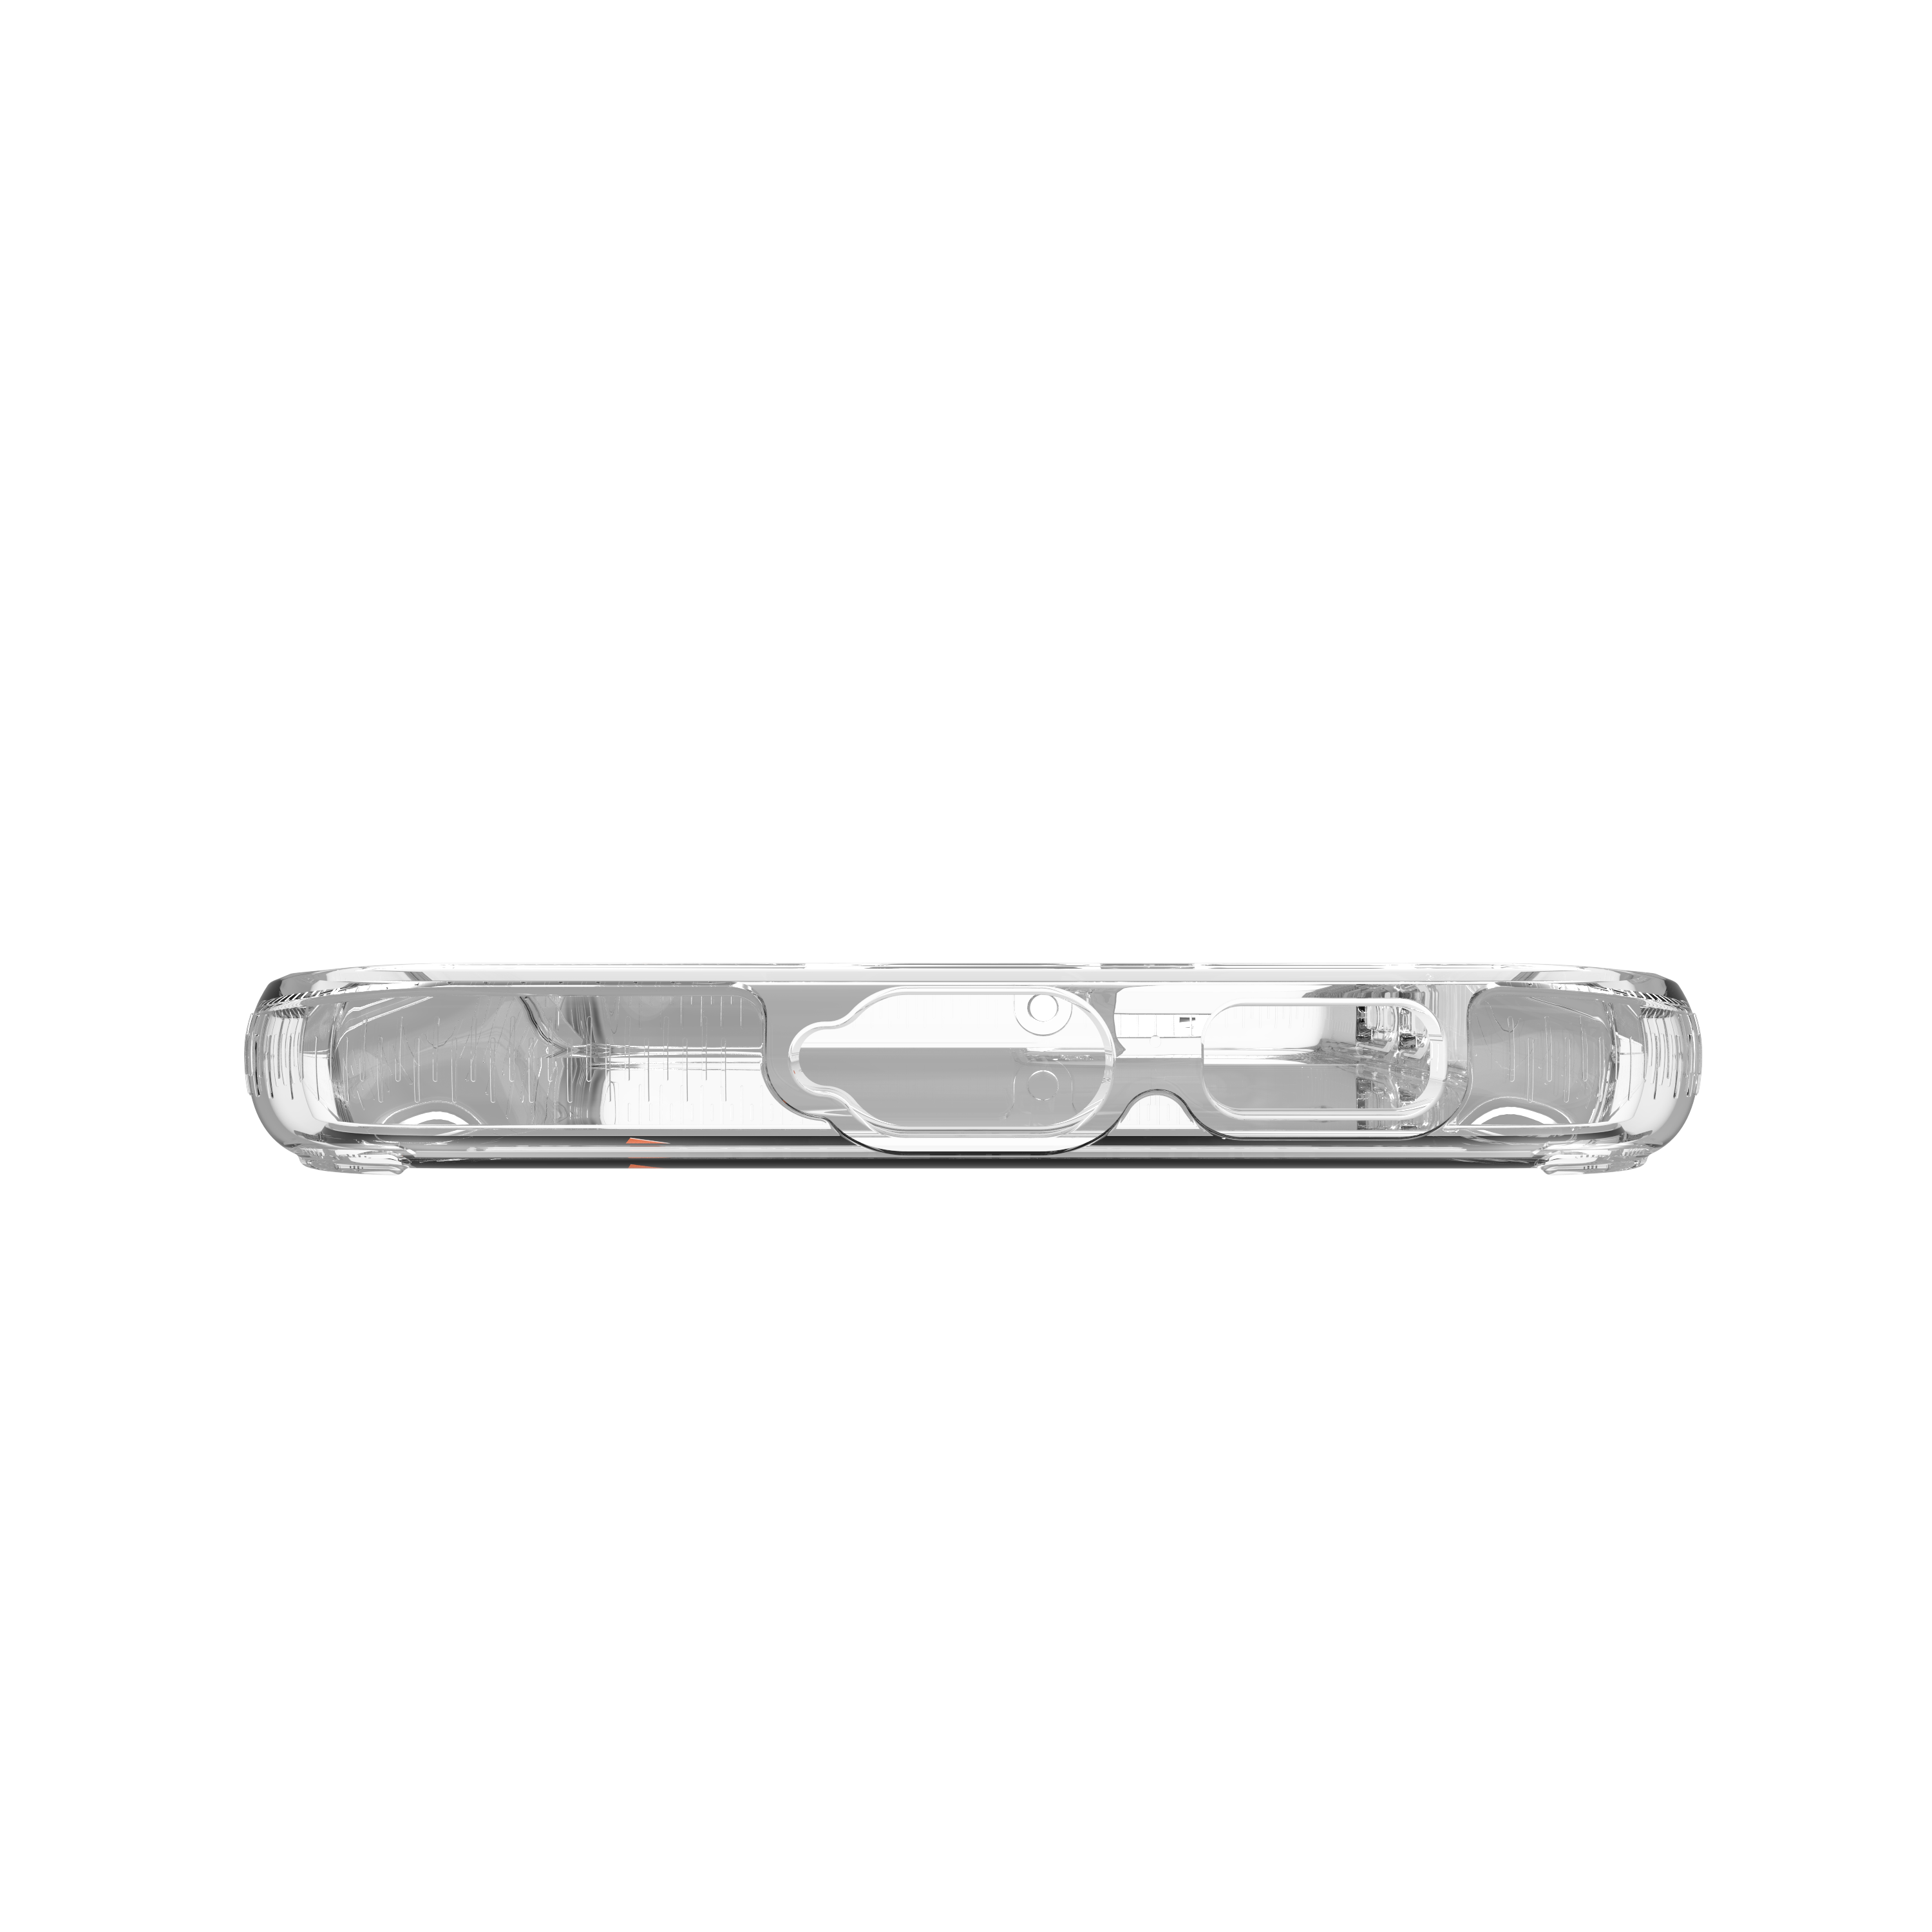 Ốp lưng chống sốc Gear4 D3O Crystal Palace 4m cho Samsung Galaxy S22 Series - Hàng chính hãng